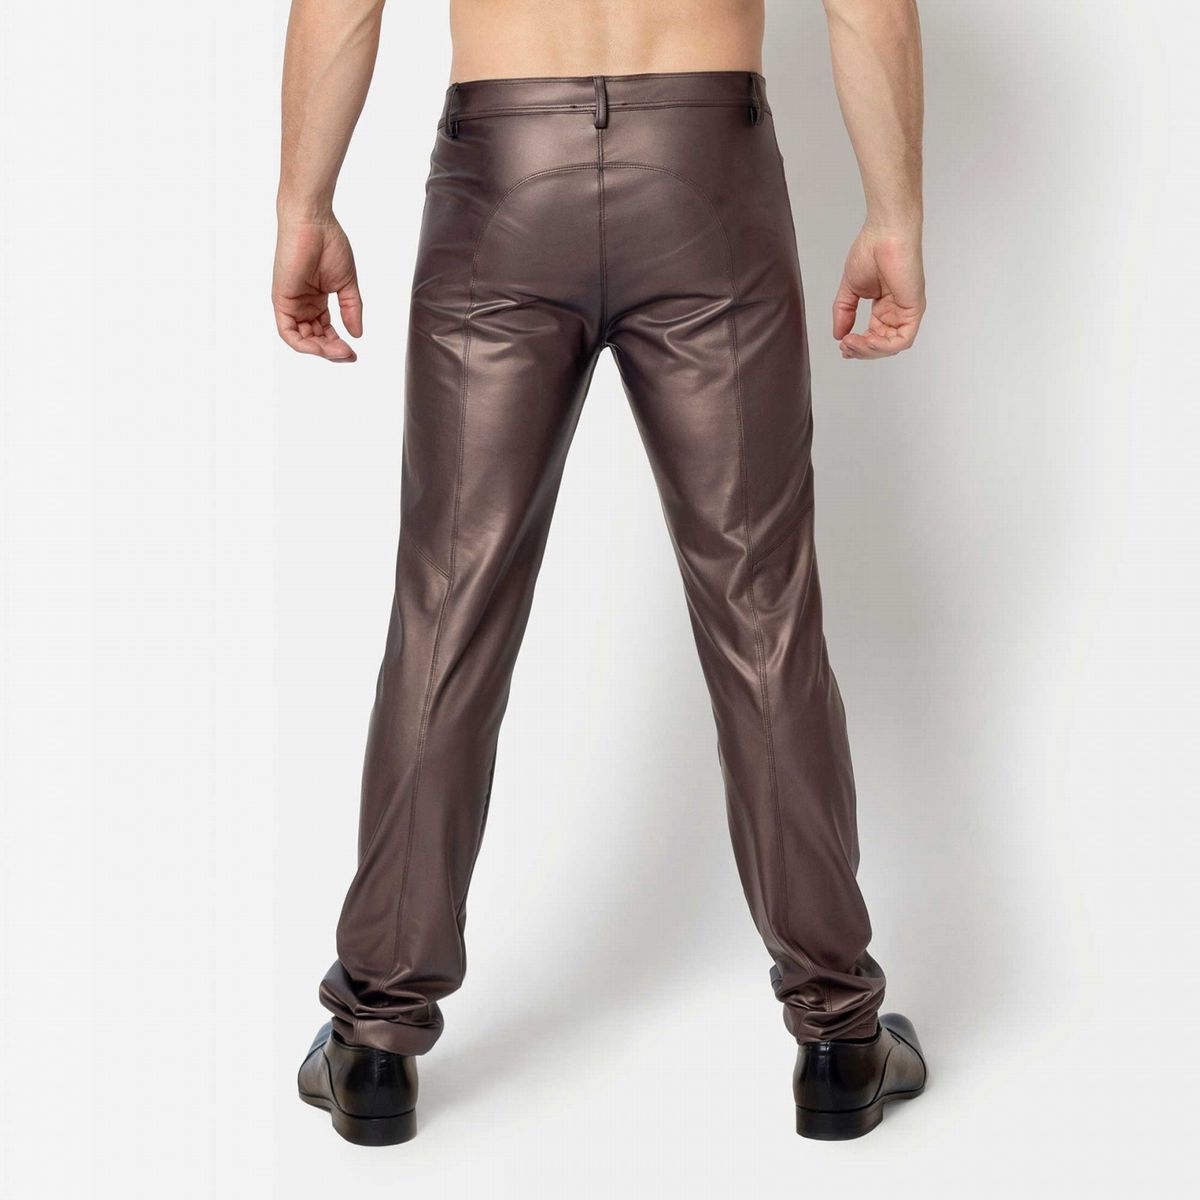 ketil-brown-wetlook-trousers (1).jpg